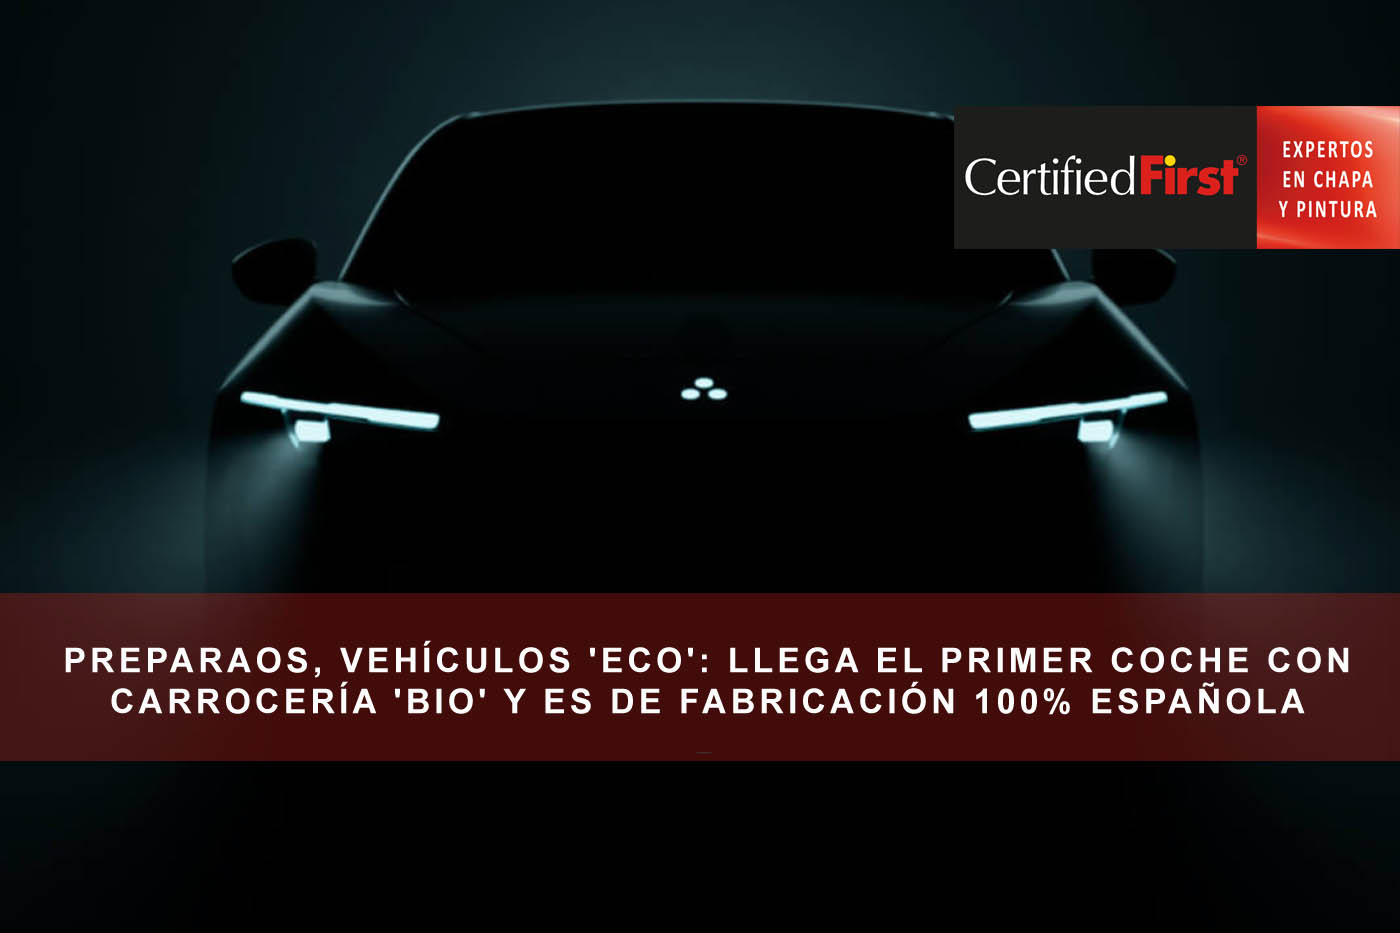 Preparaos, vehículos 'eco': llega el primer coche con carrocería 'bio' y es de fabricación 100% española